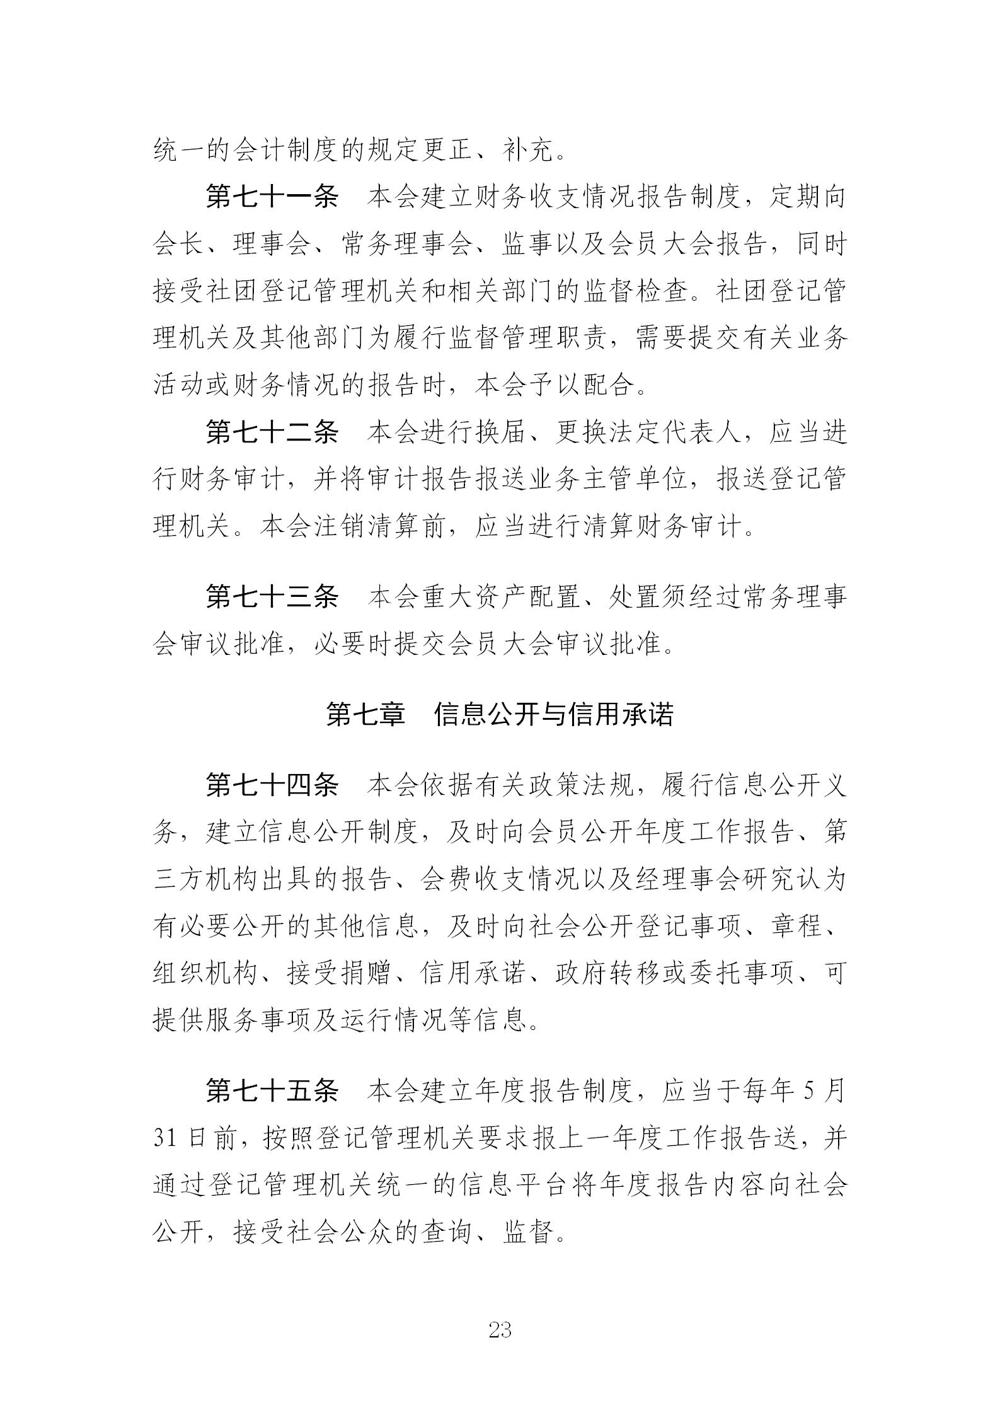 3-广东省羽毛球协会新章程20221107-根据民政厅修改意见修改_23